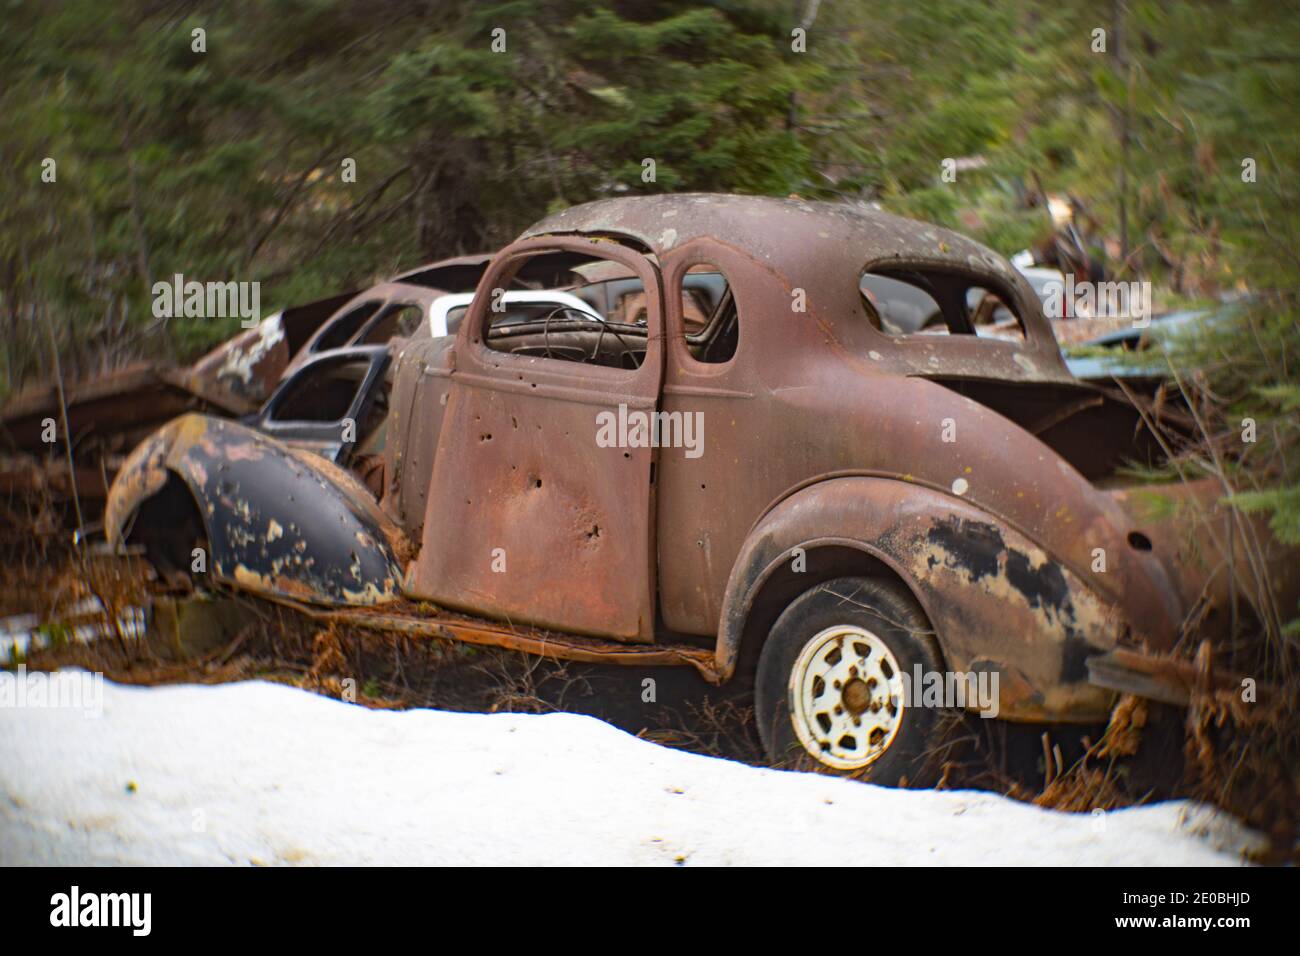 Un oxidado Chevrolet 1937 2 puertas Coupé, en una zona boscosa, en Noxon, Montana esta imagen fue tomada con una antigua lente Petzval y mostrará signos de dis Foto de stock